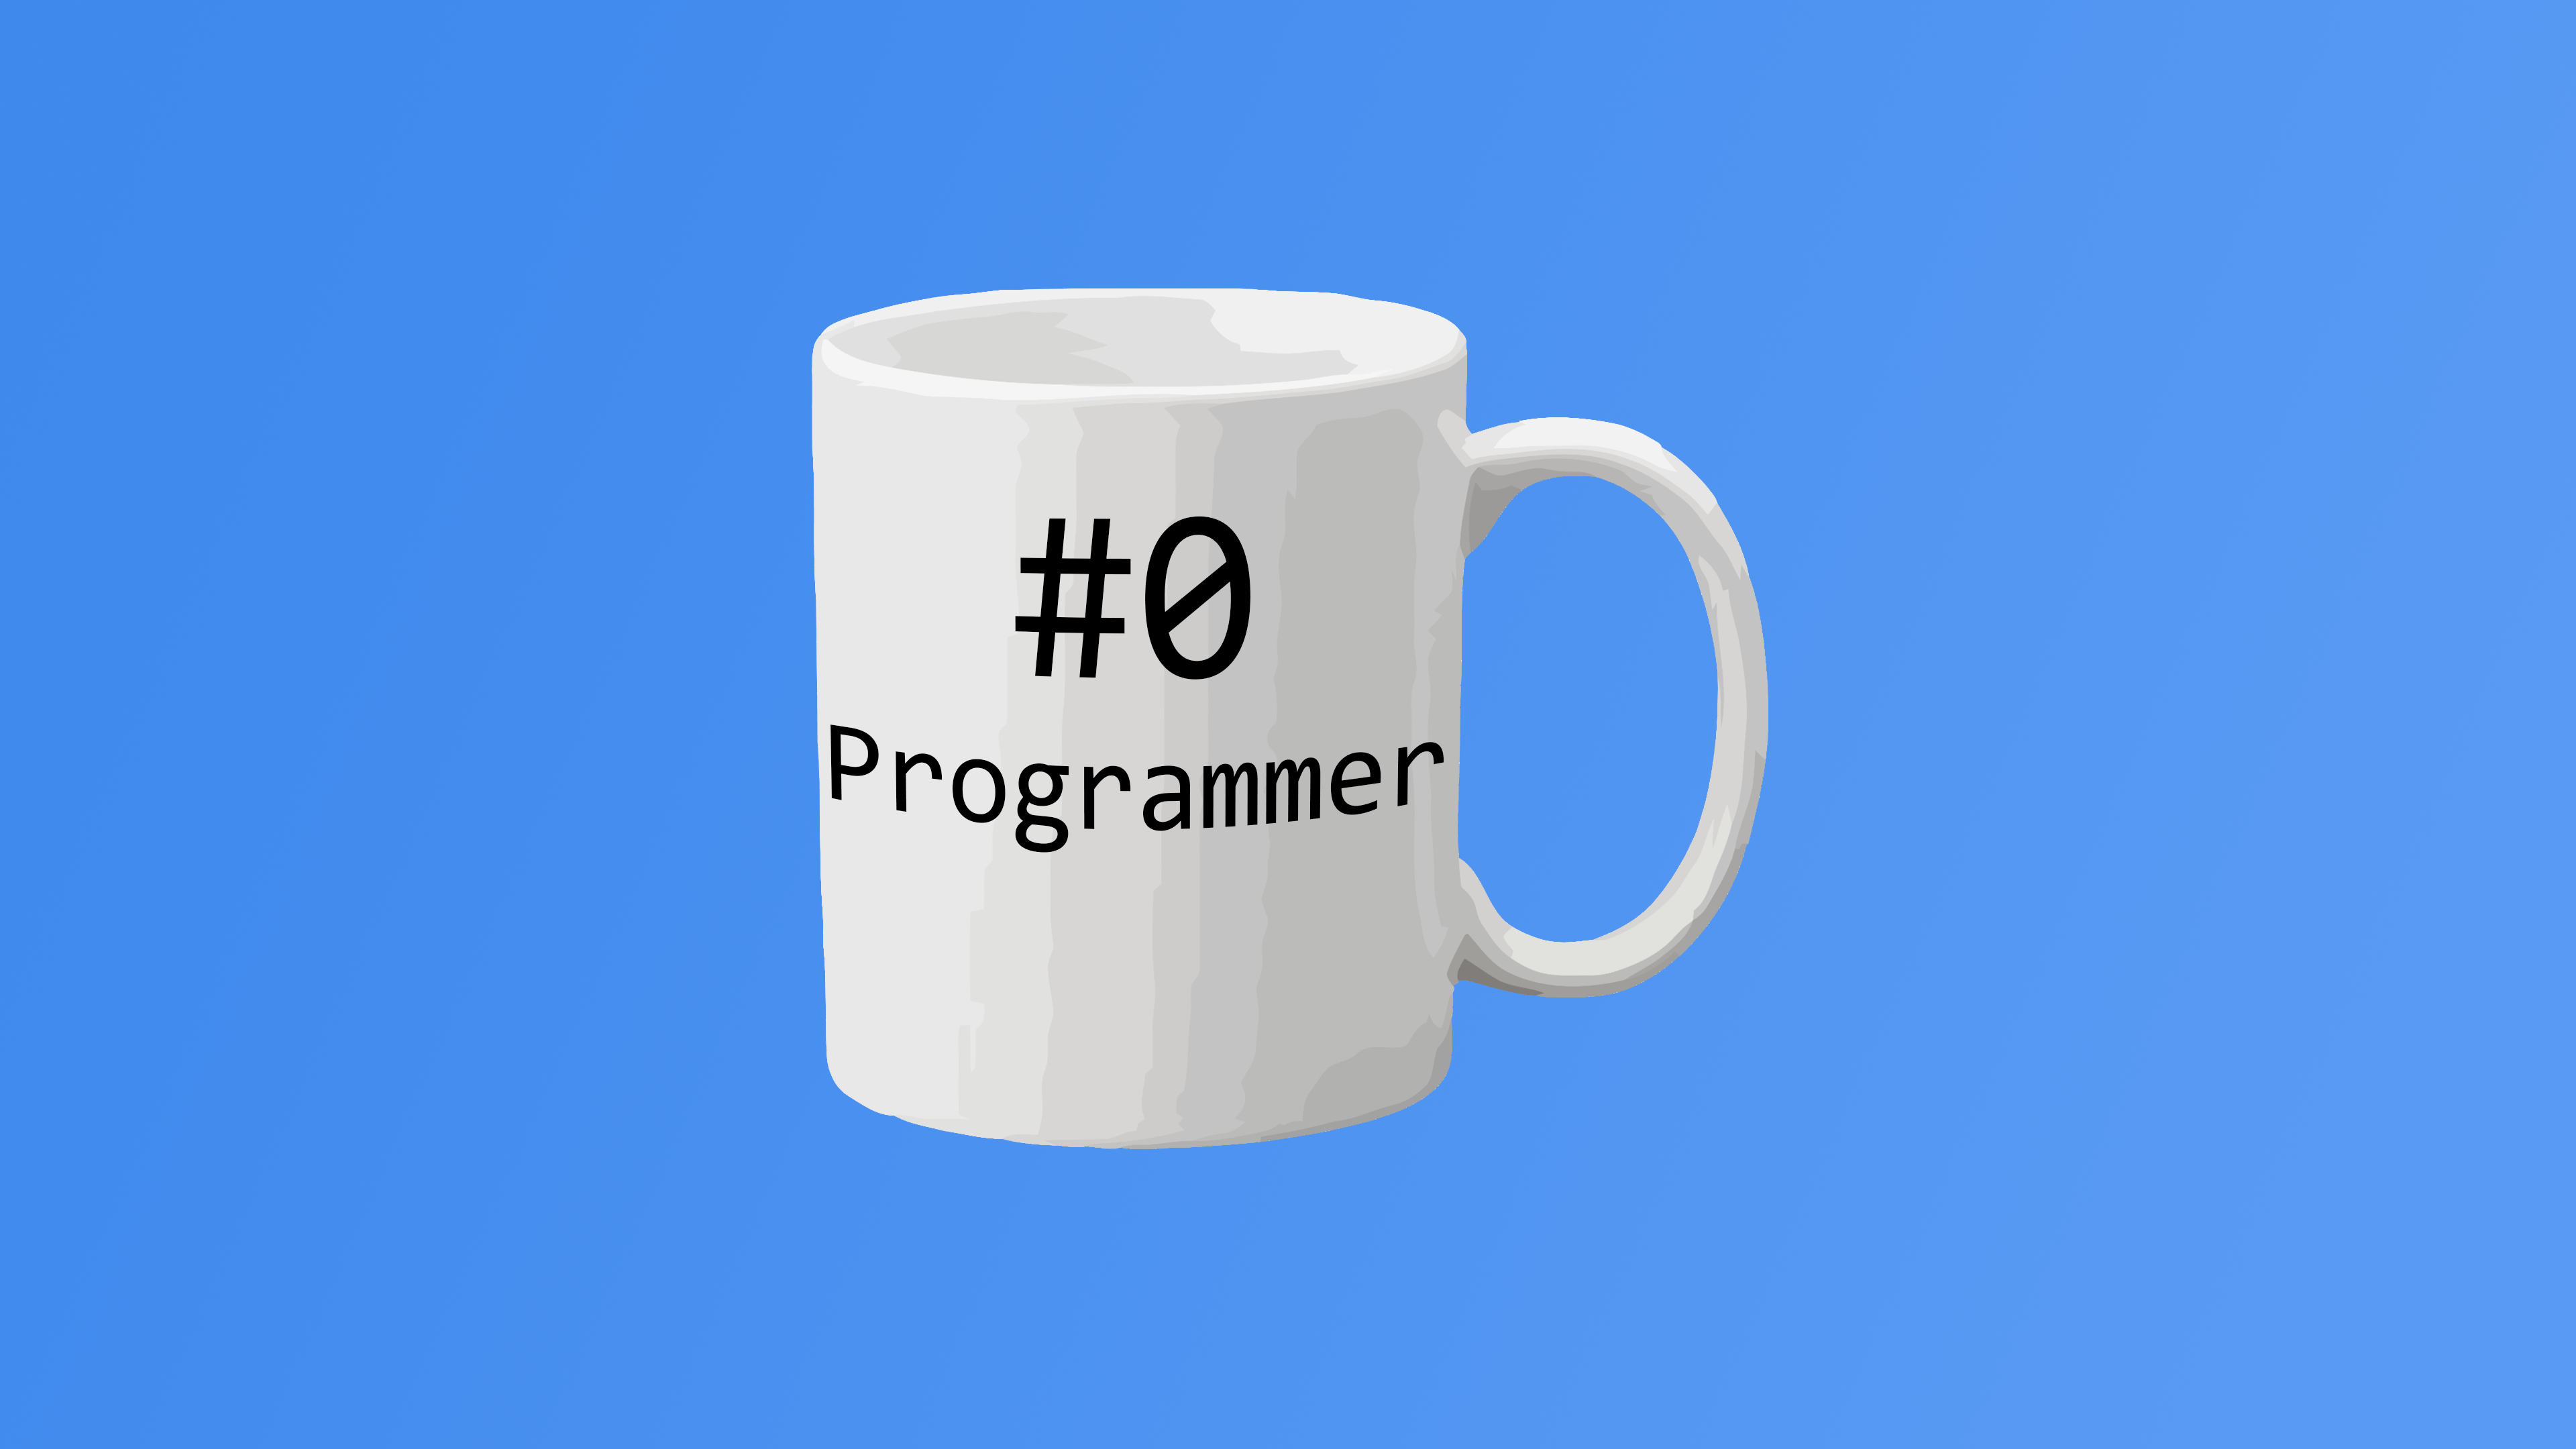 My new wallpapers : ProgrammerHumor 